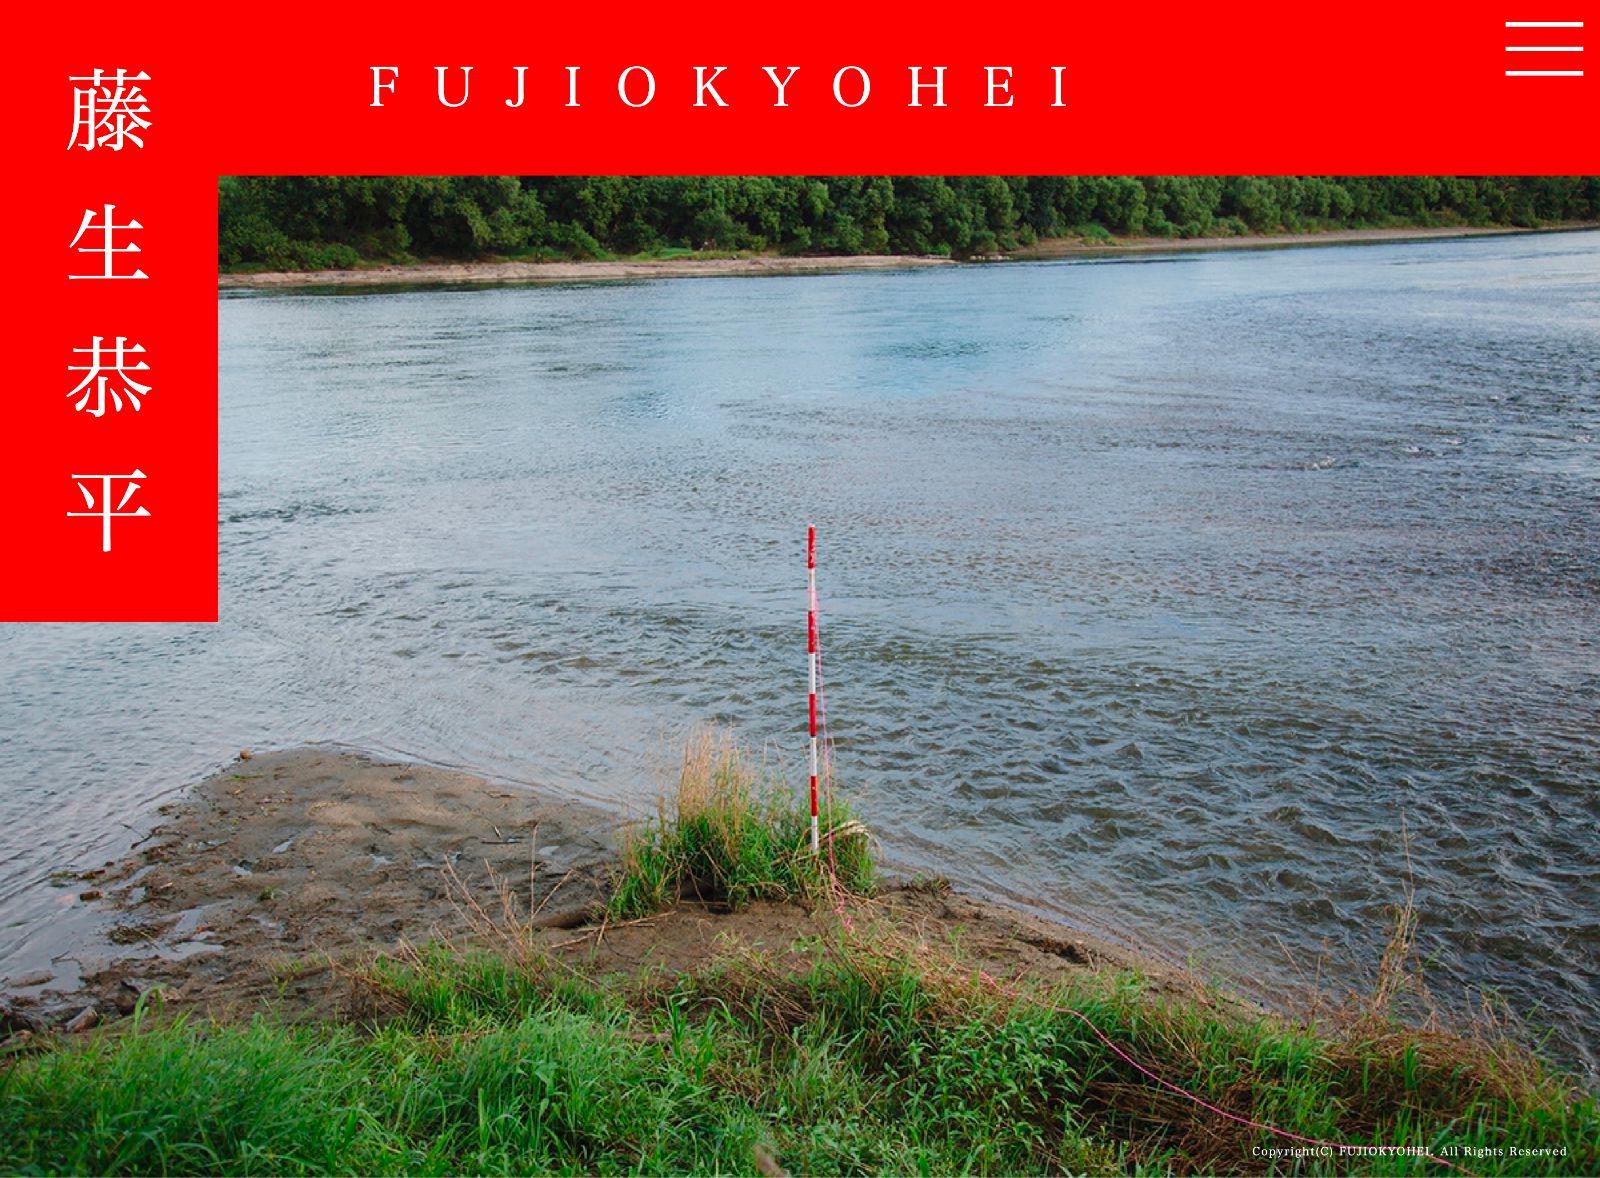 FujioKyohei